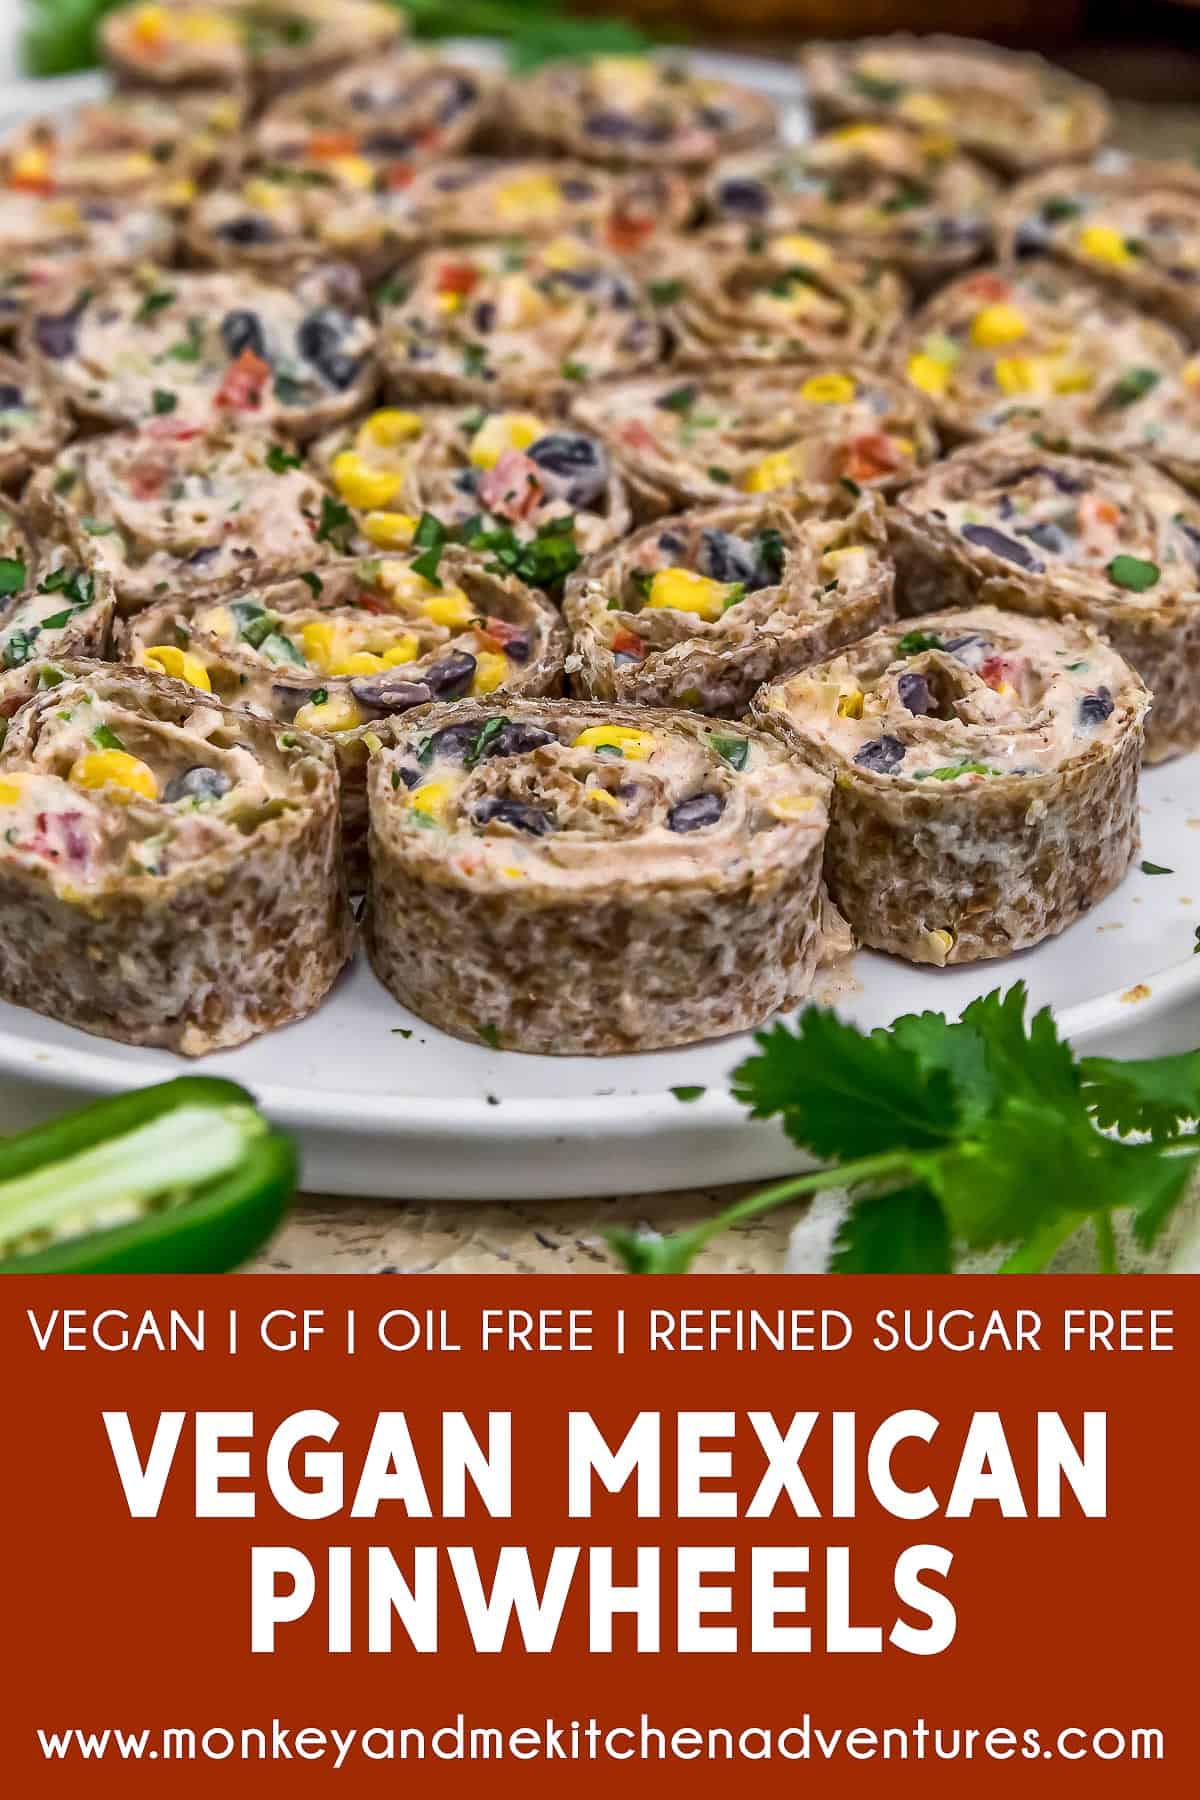 Vegan Mexican Pinwheels with text description